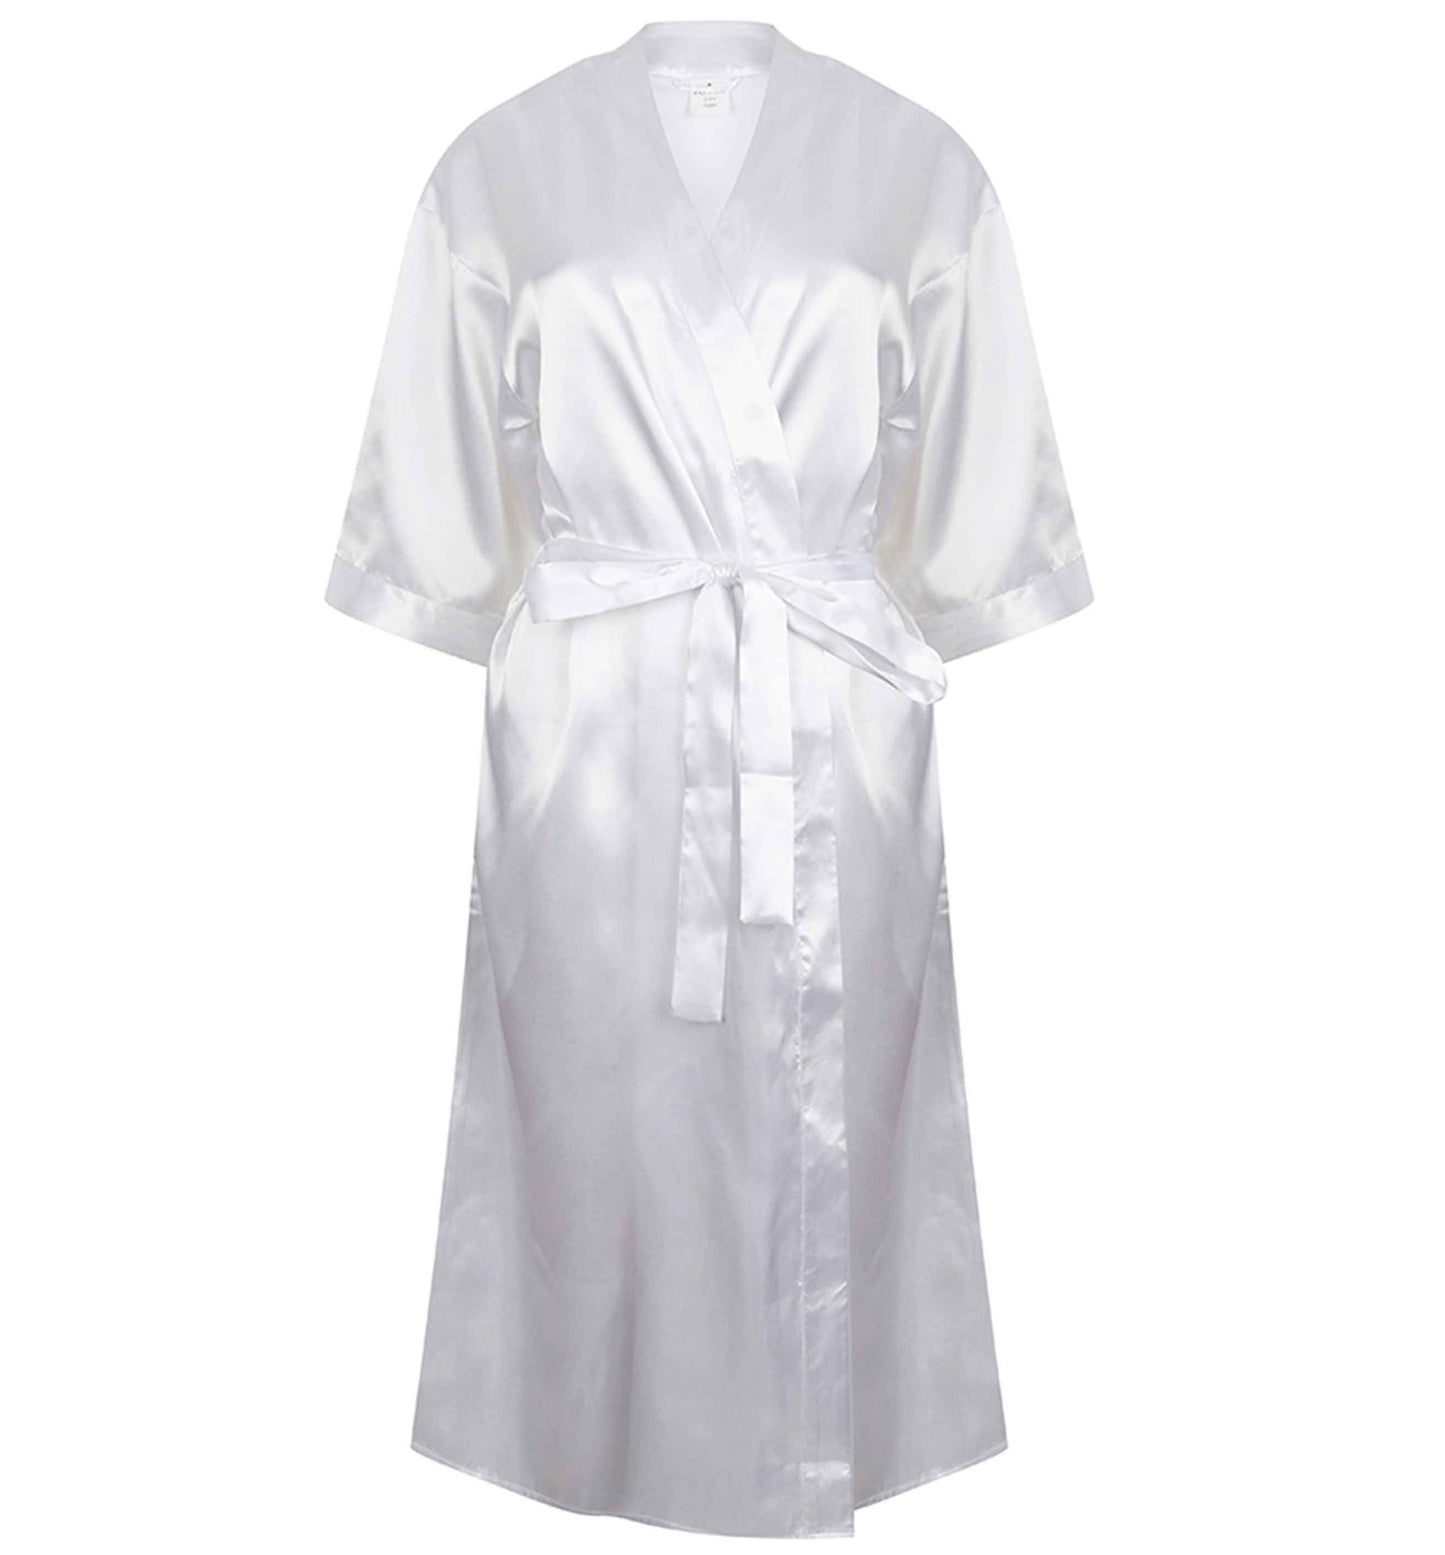 Elfin' around | 8-18 | Kimono style satin robe | Ladies dressing gown